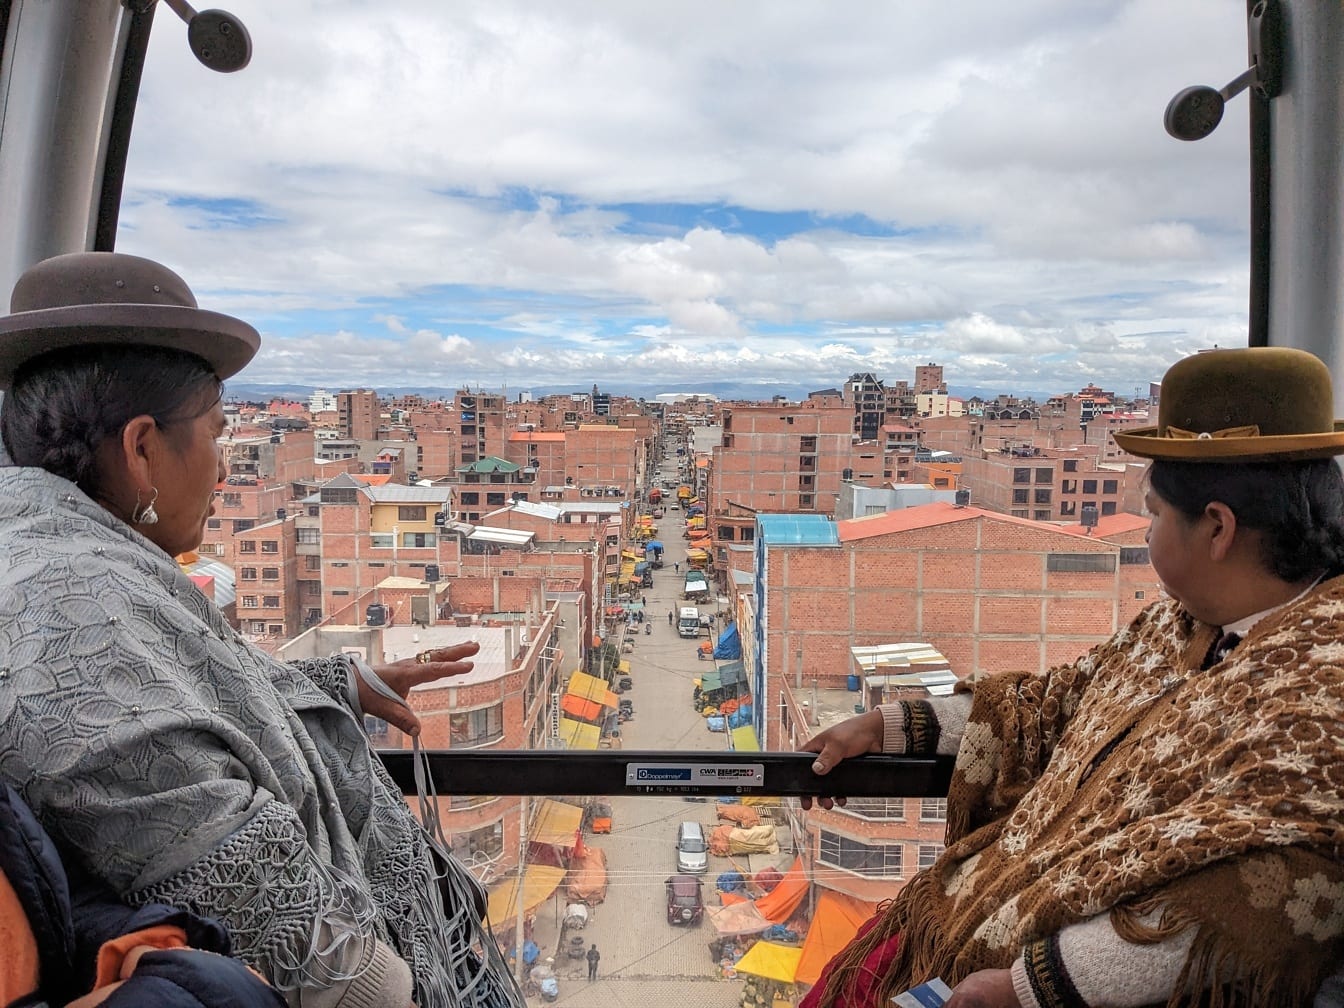 Δύο γυναίκες από τη Βολιβία ανεβαίνουν στο τελεφερίκ και έχουν θέα στην πόλη της Λα Παζ στη Βολιβία